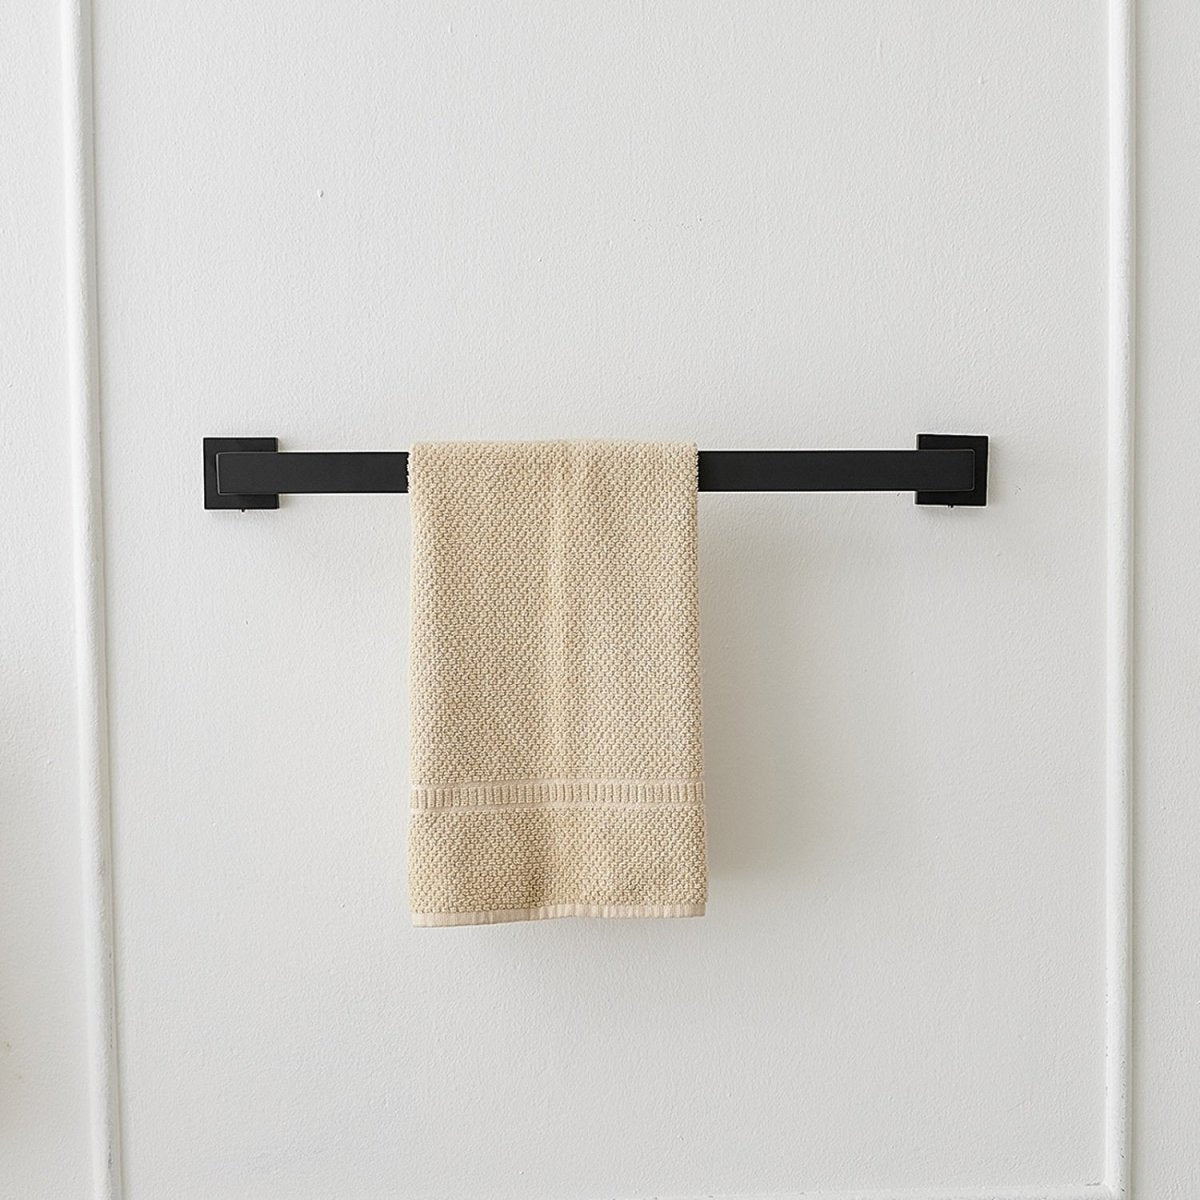 5 PCS Towel Bar Towel Hook Toilet Paper Holder Set Black - buyfaucet.com